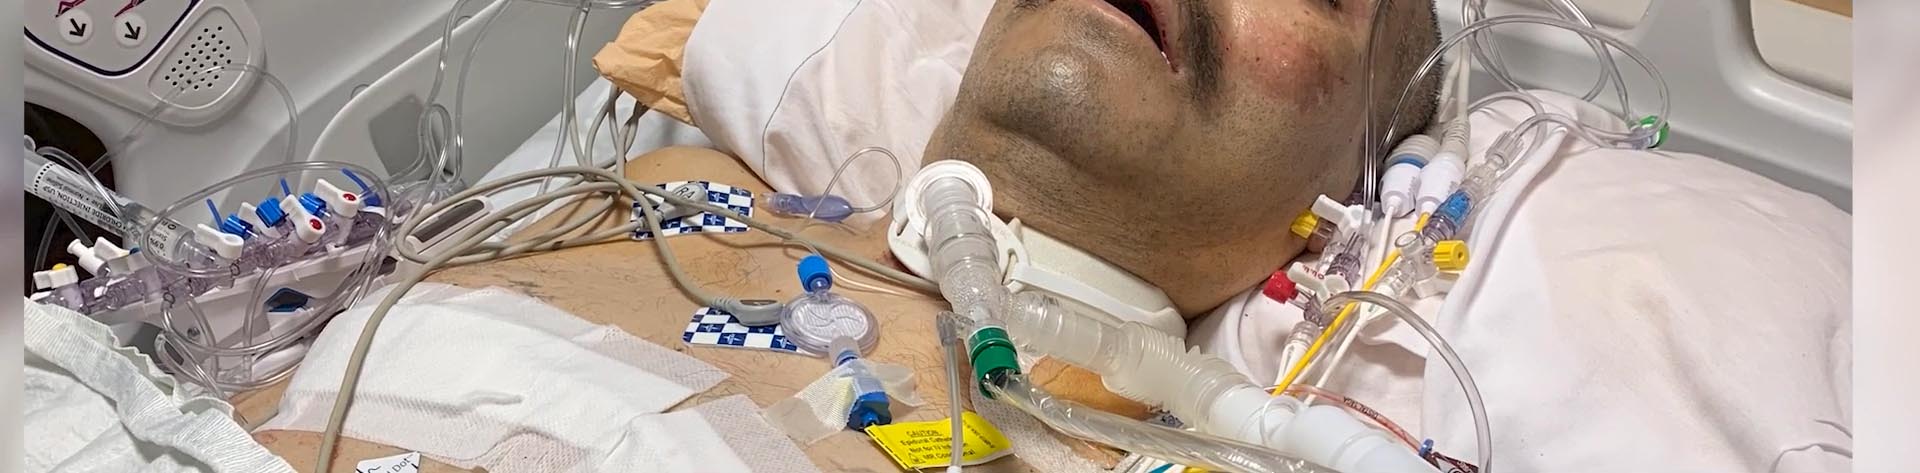 Jose Graciano in seinem Krankenhausbett, der sich von COVID erholt